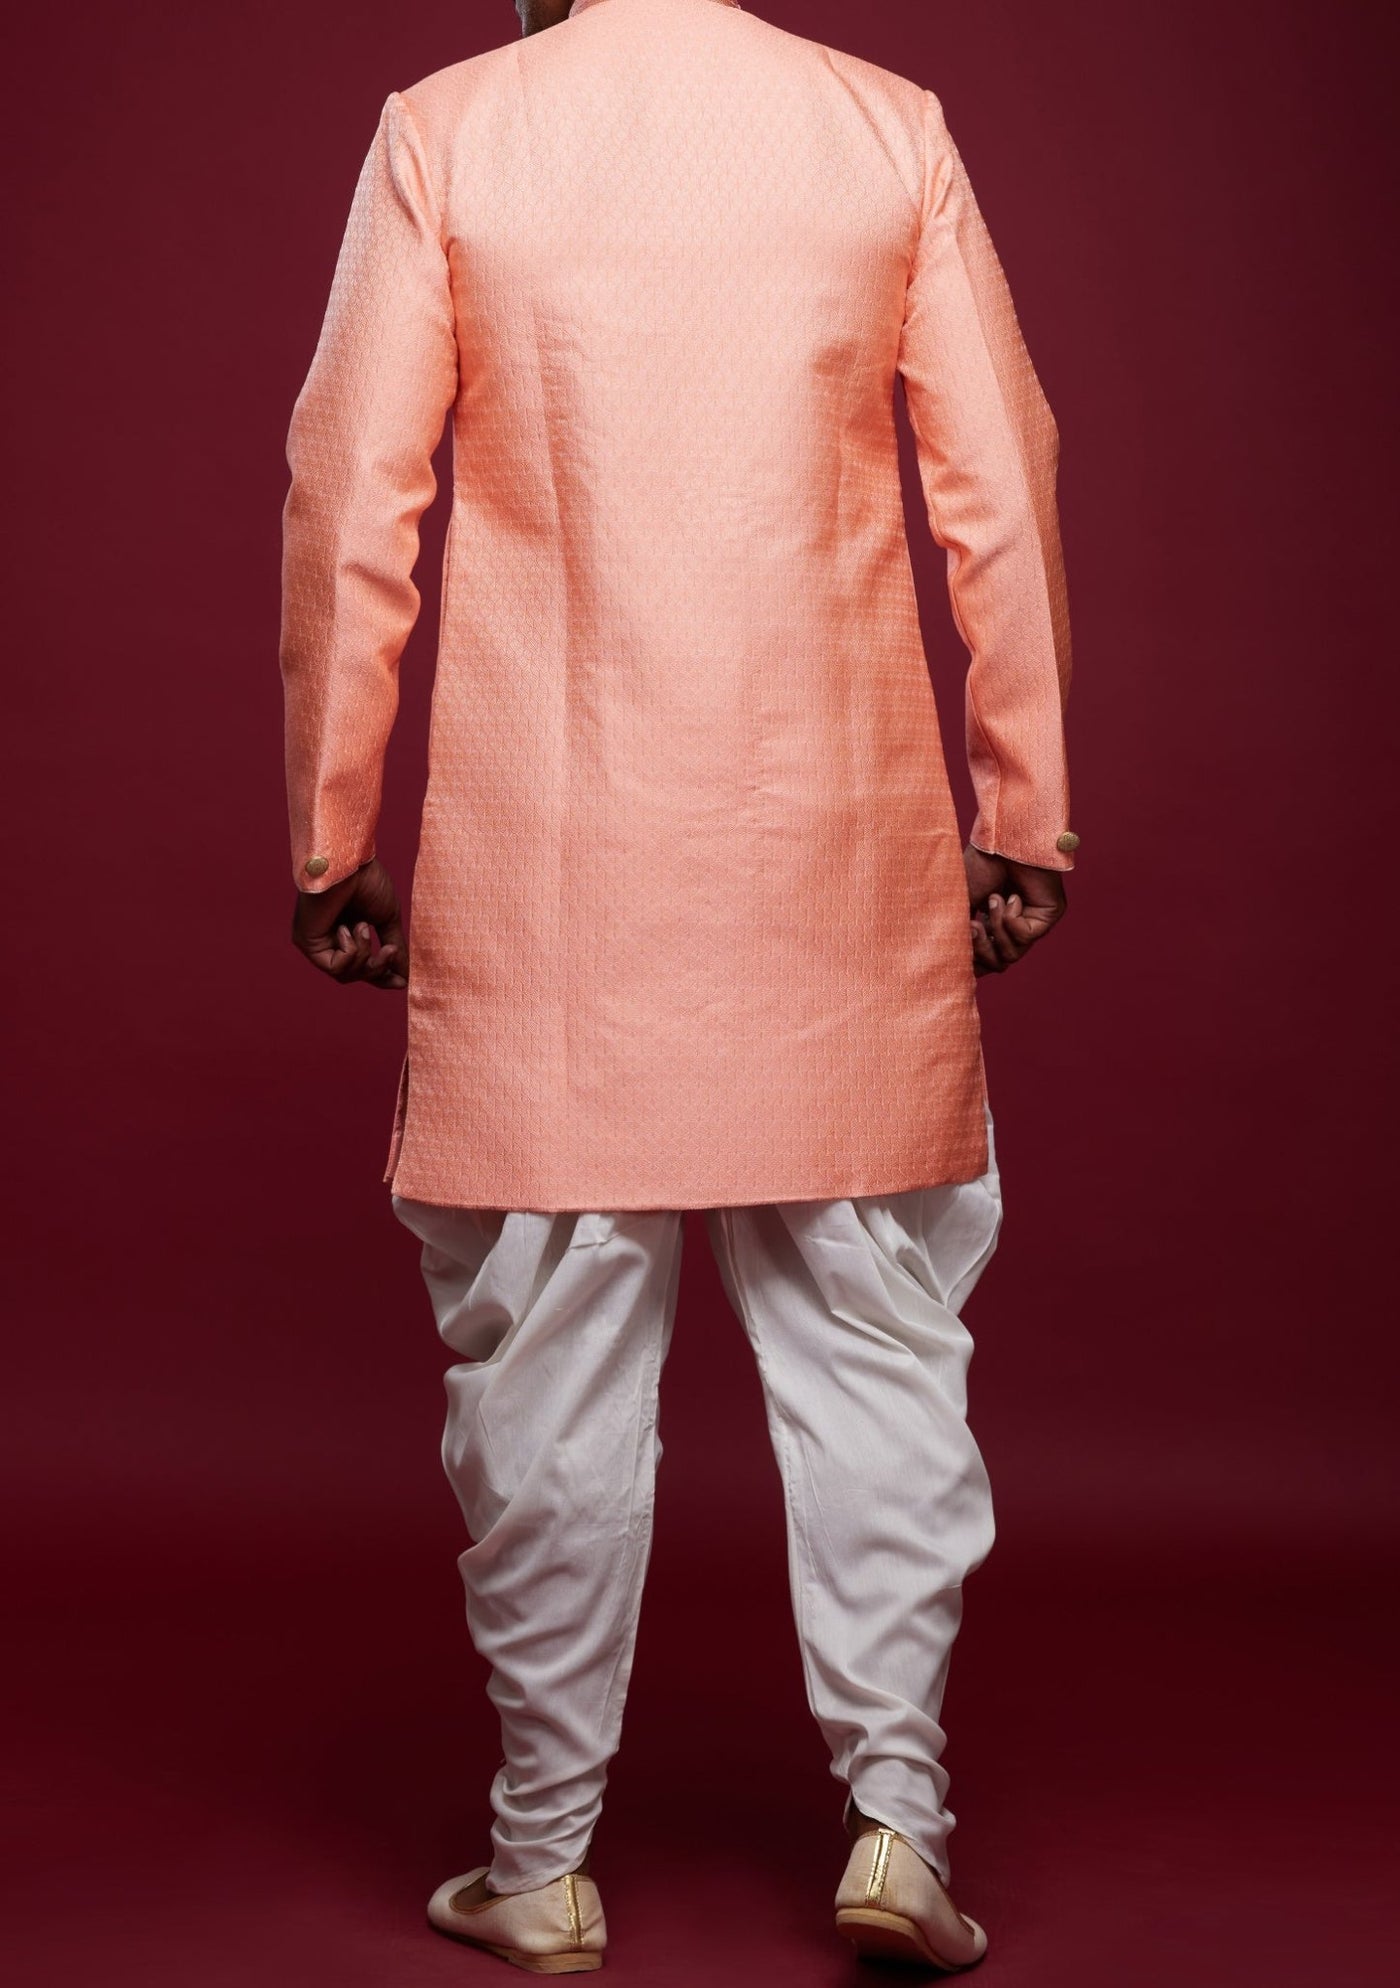 Men's Semi Indo Western Party Wear Sherwani Suit - db23839